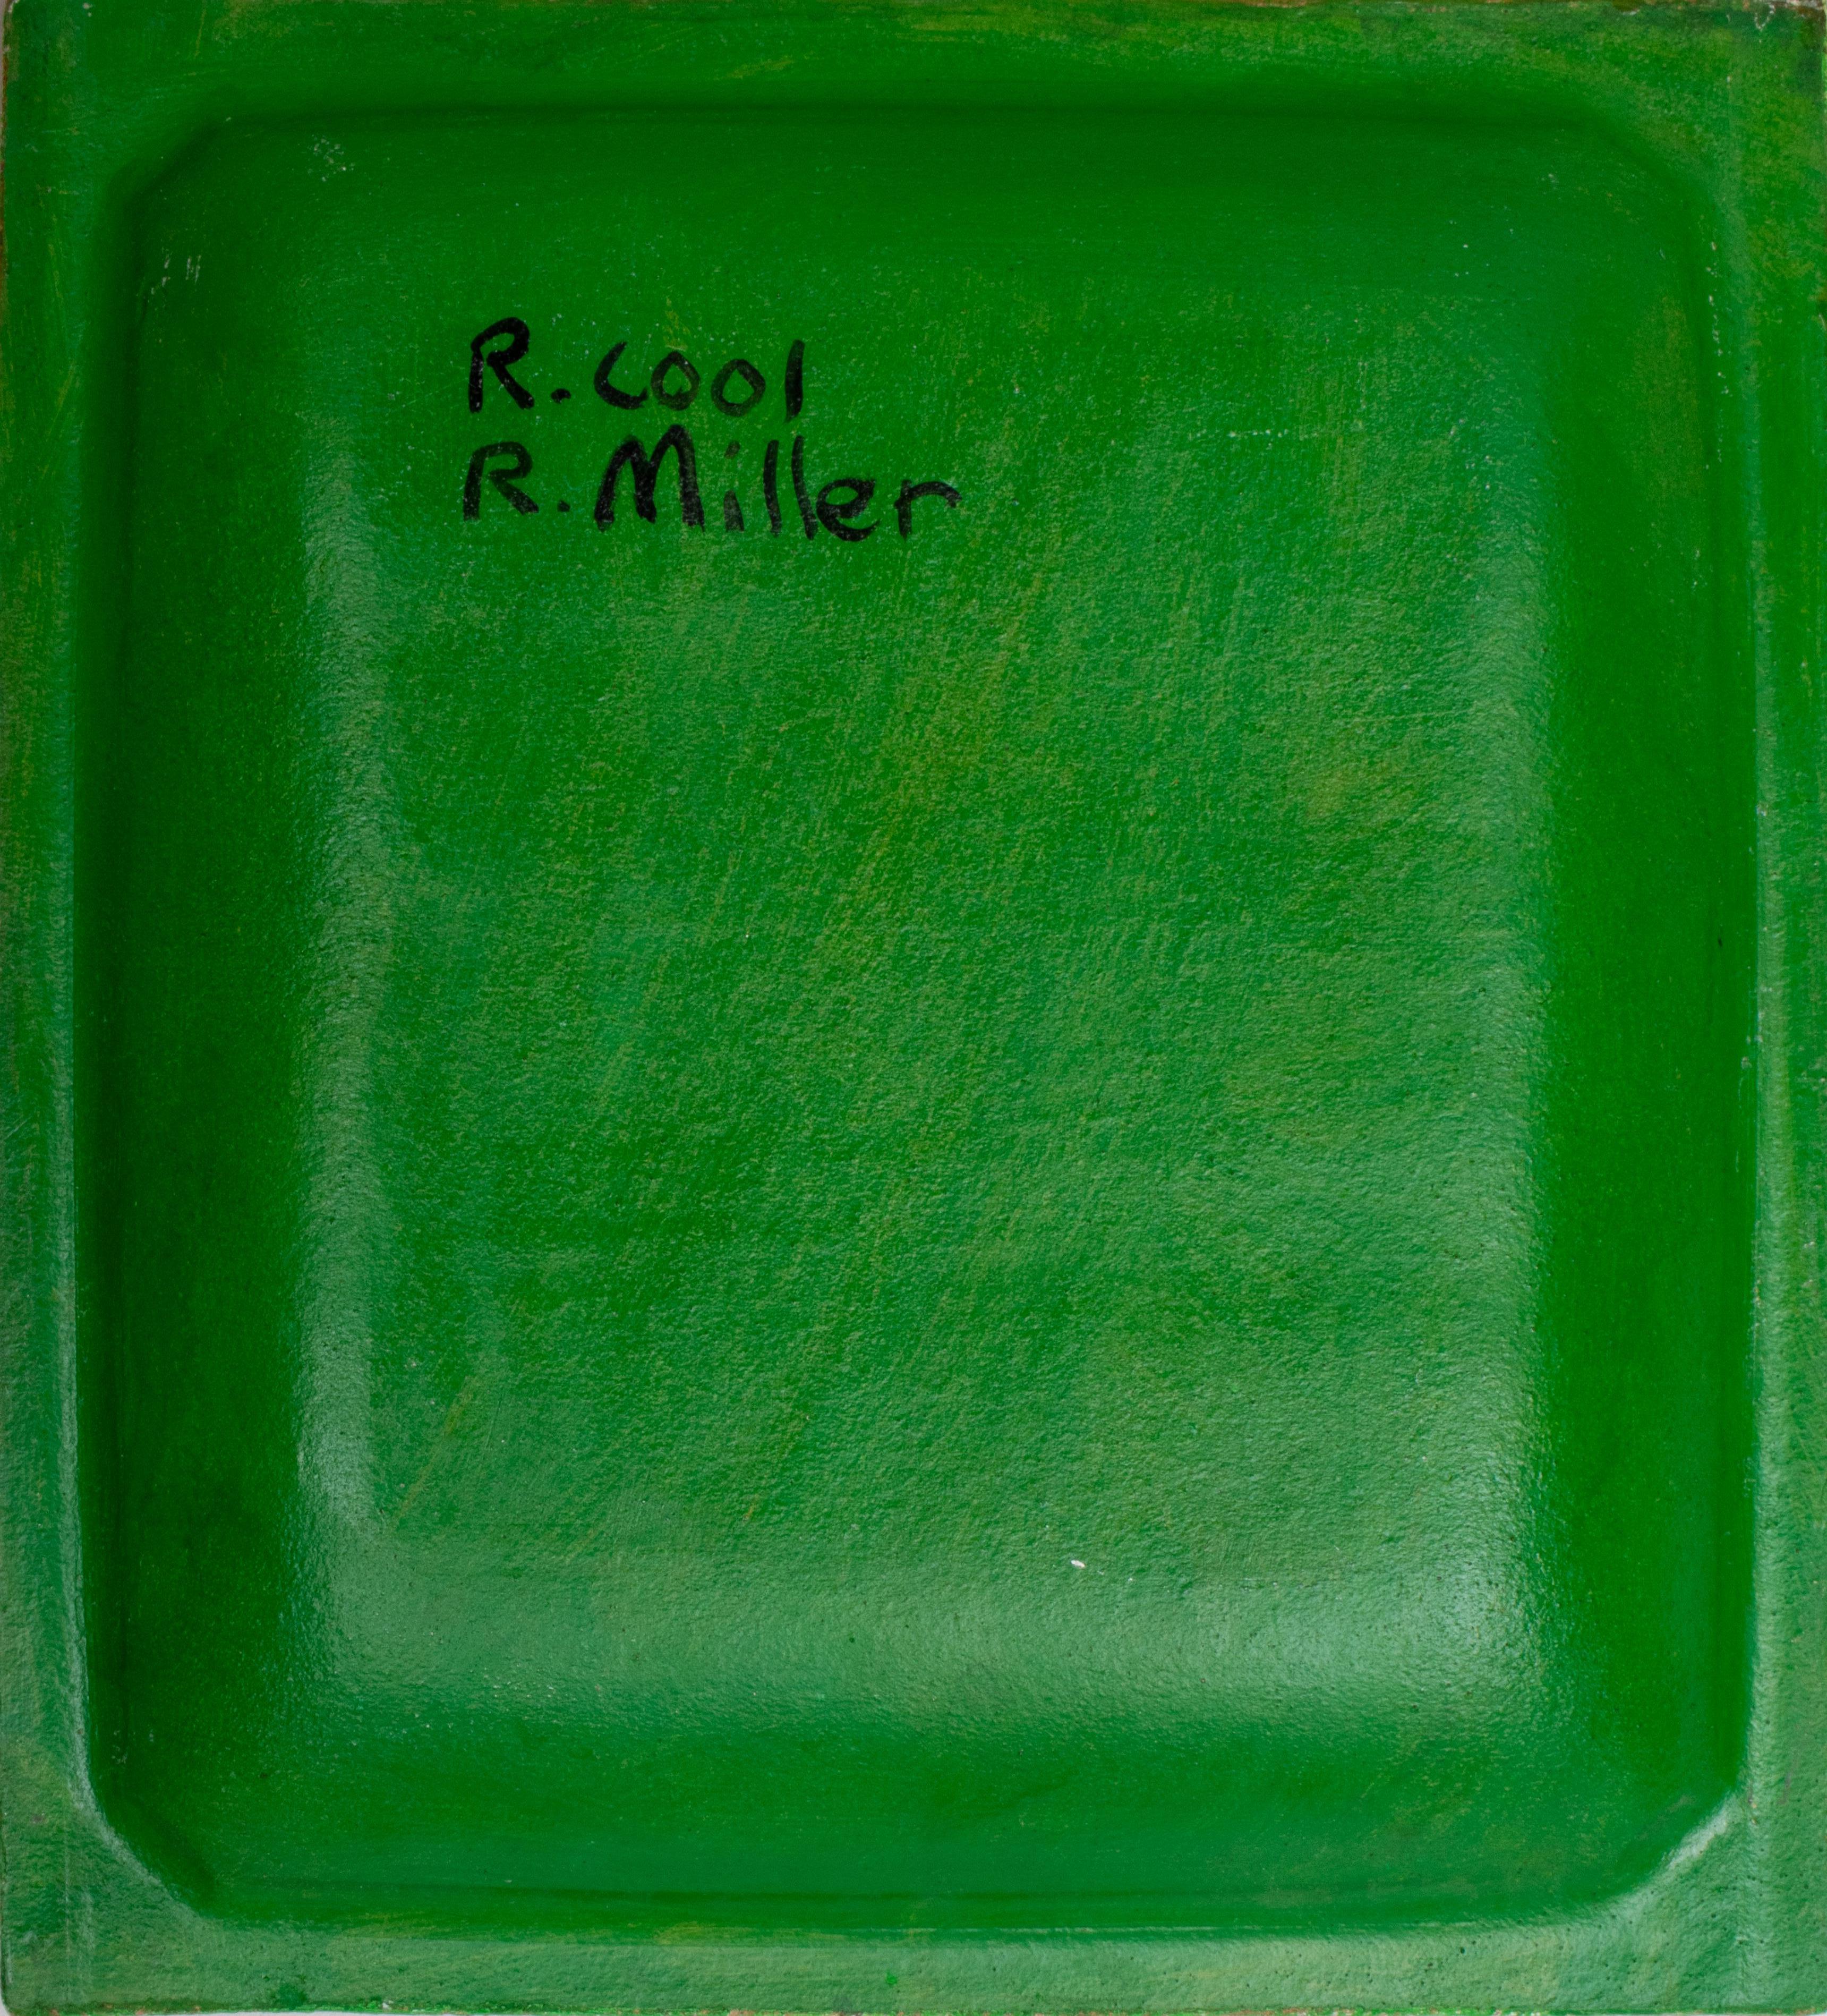 Rebecca Cool & Ross Miller Ceramic Platter For Sale 1